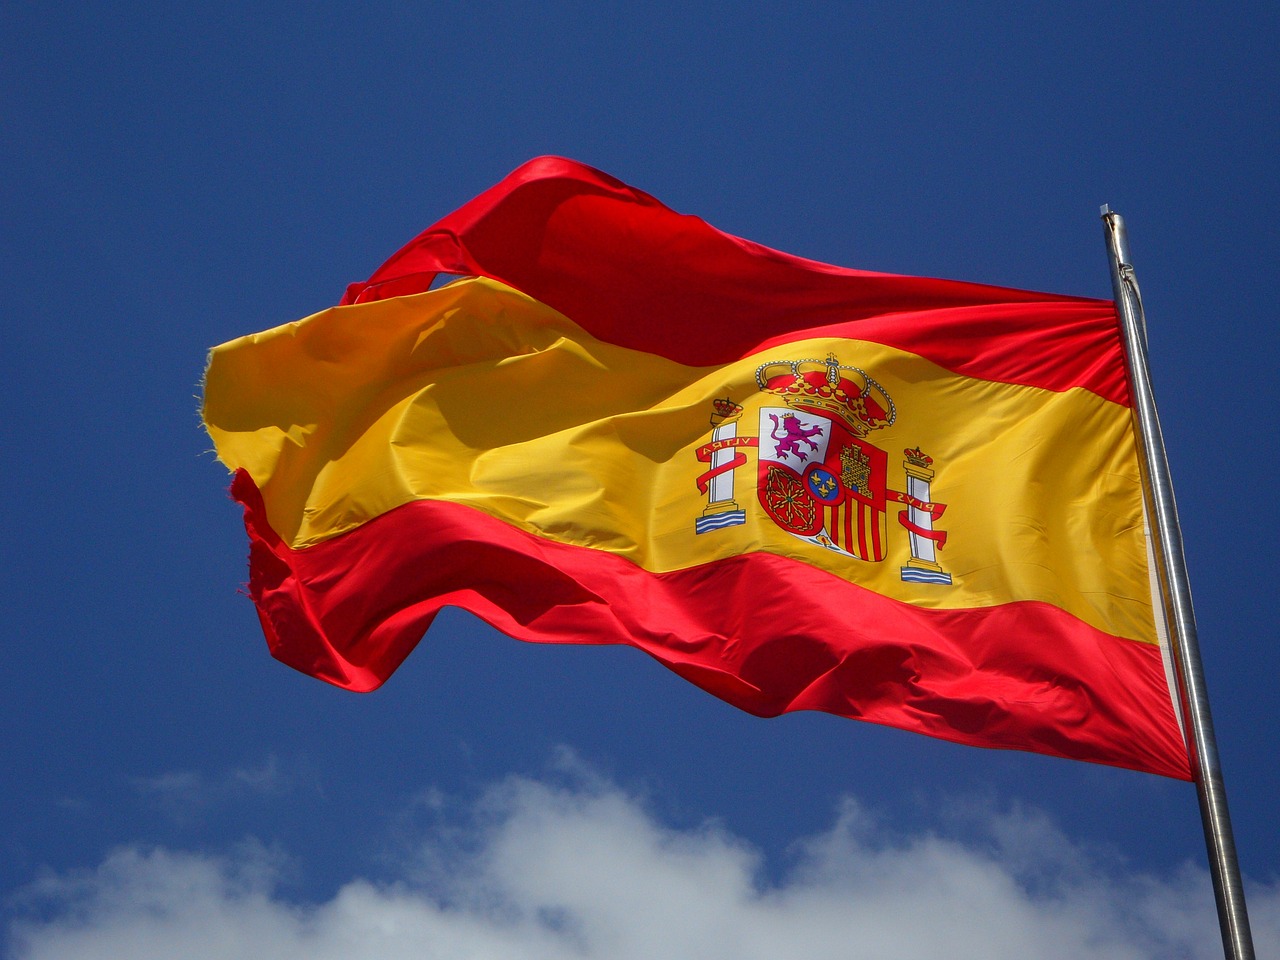 El primer ministro español decide permanecer en el cargo en medio de acusaciones de corrupción contra su esposa: jurista